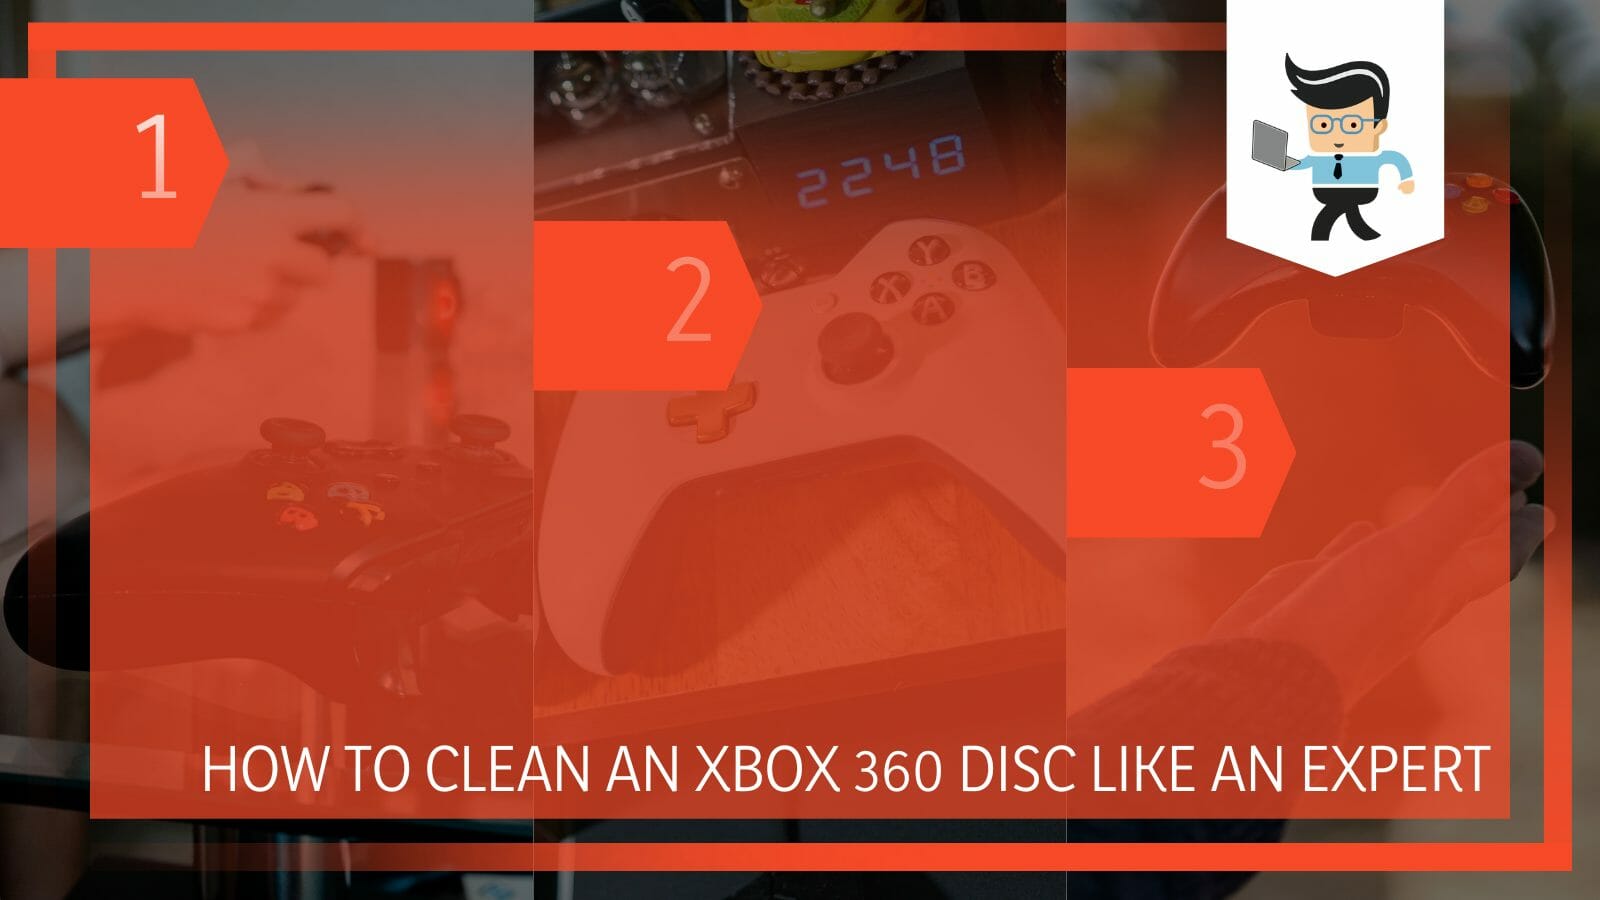 Clean an Xbox 360 Disc Like an Expert